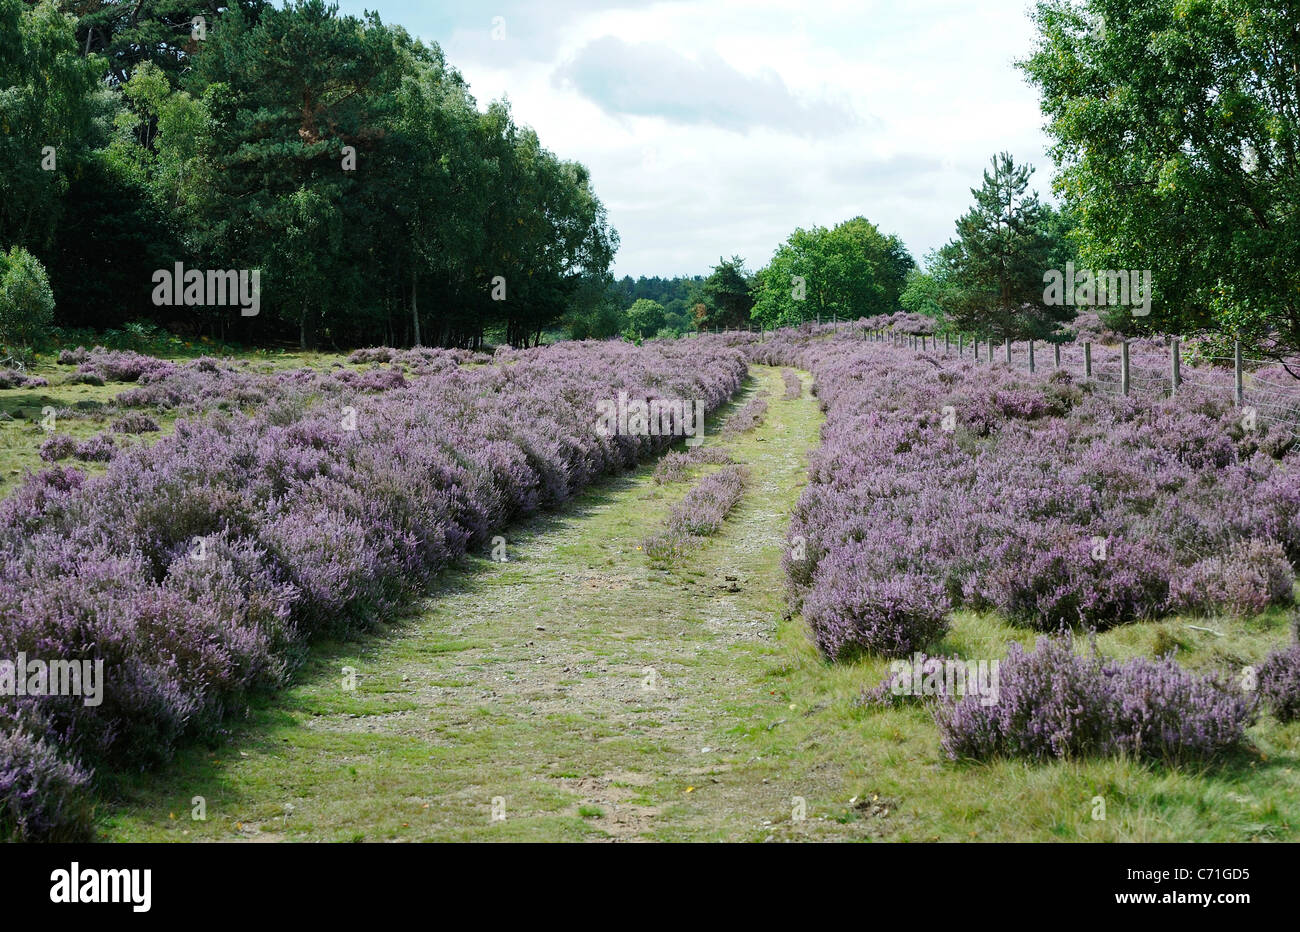 Woodland Pfad oder Maultierweg schneiden durch eine Heidelandschaft mit Heidekraut in voller lila Blüten. Stockfoto